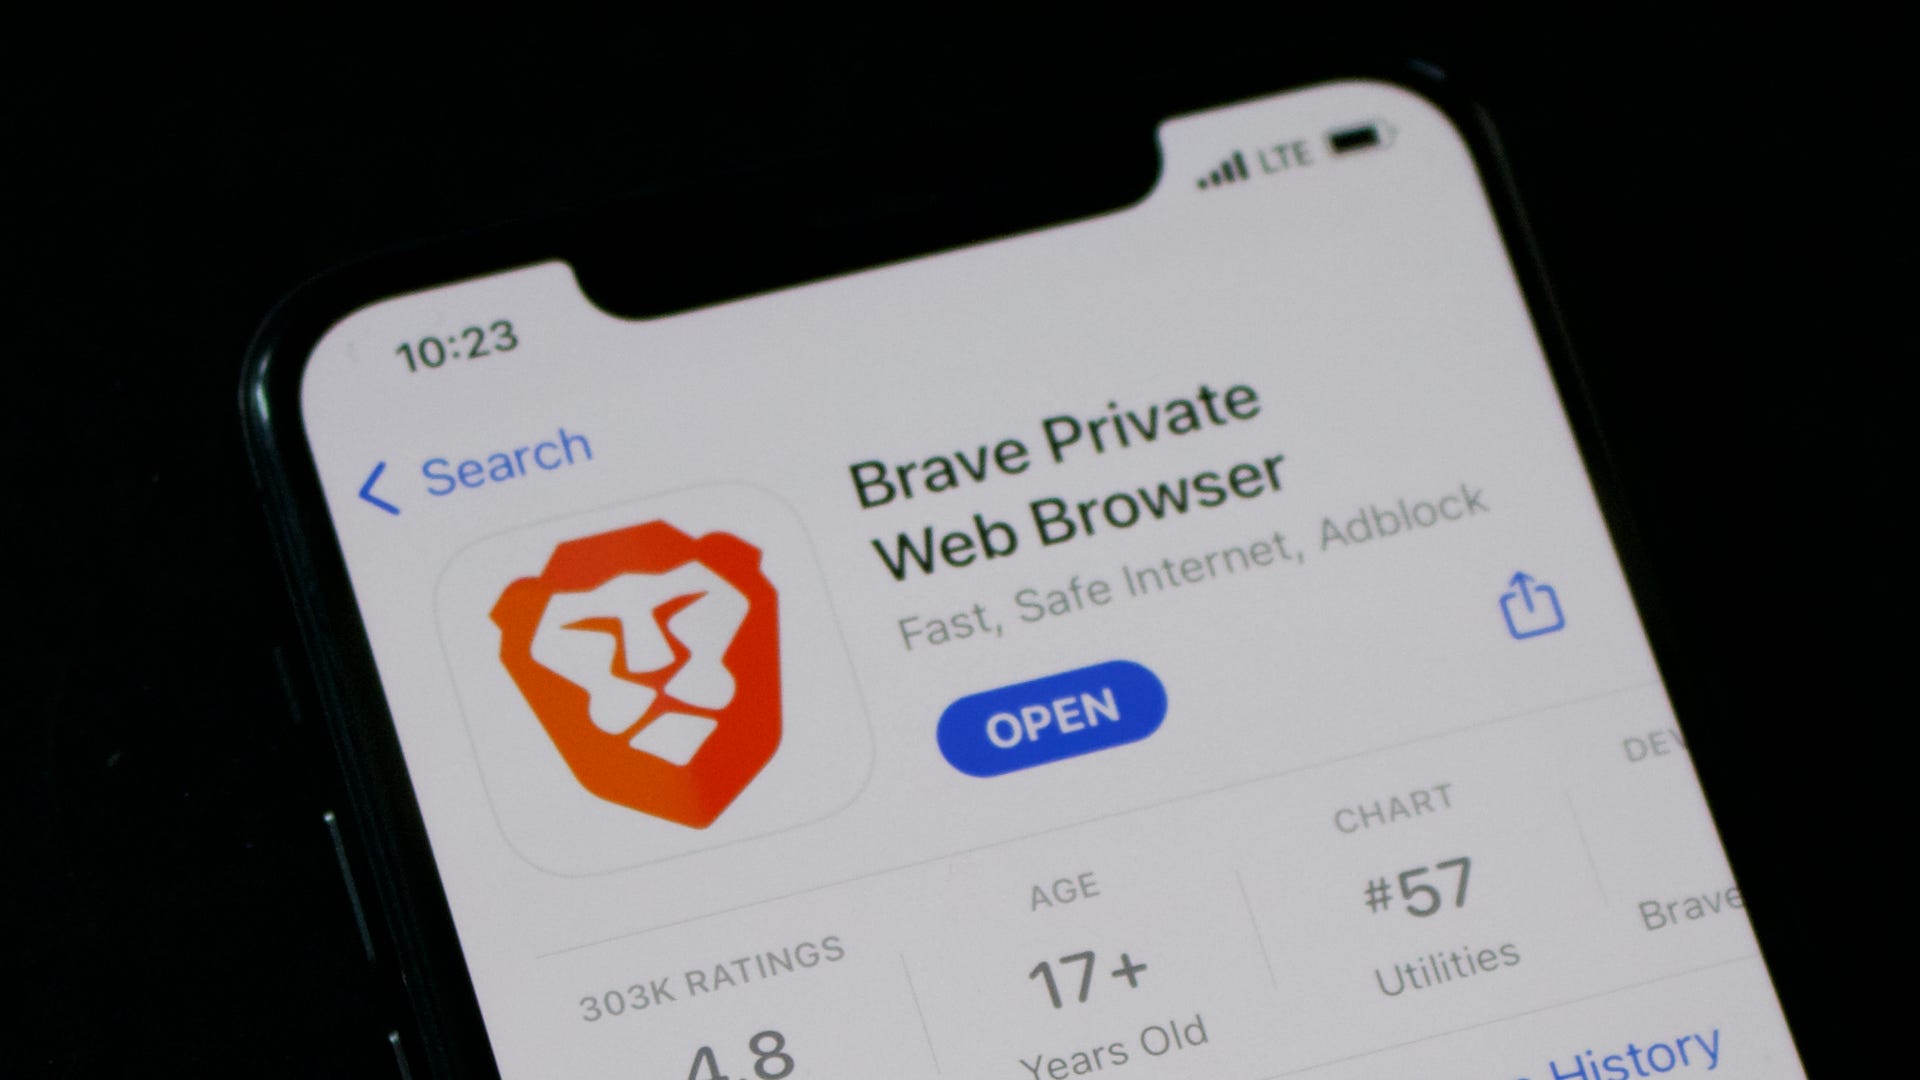 brave-browser-trova-un-modo-innovativo-per-aumentare-ulteriormente-la-privacy